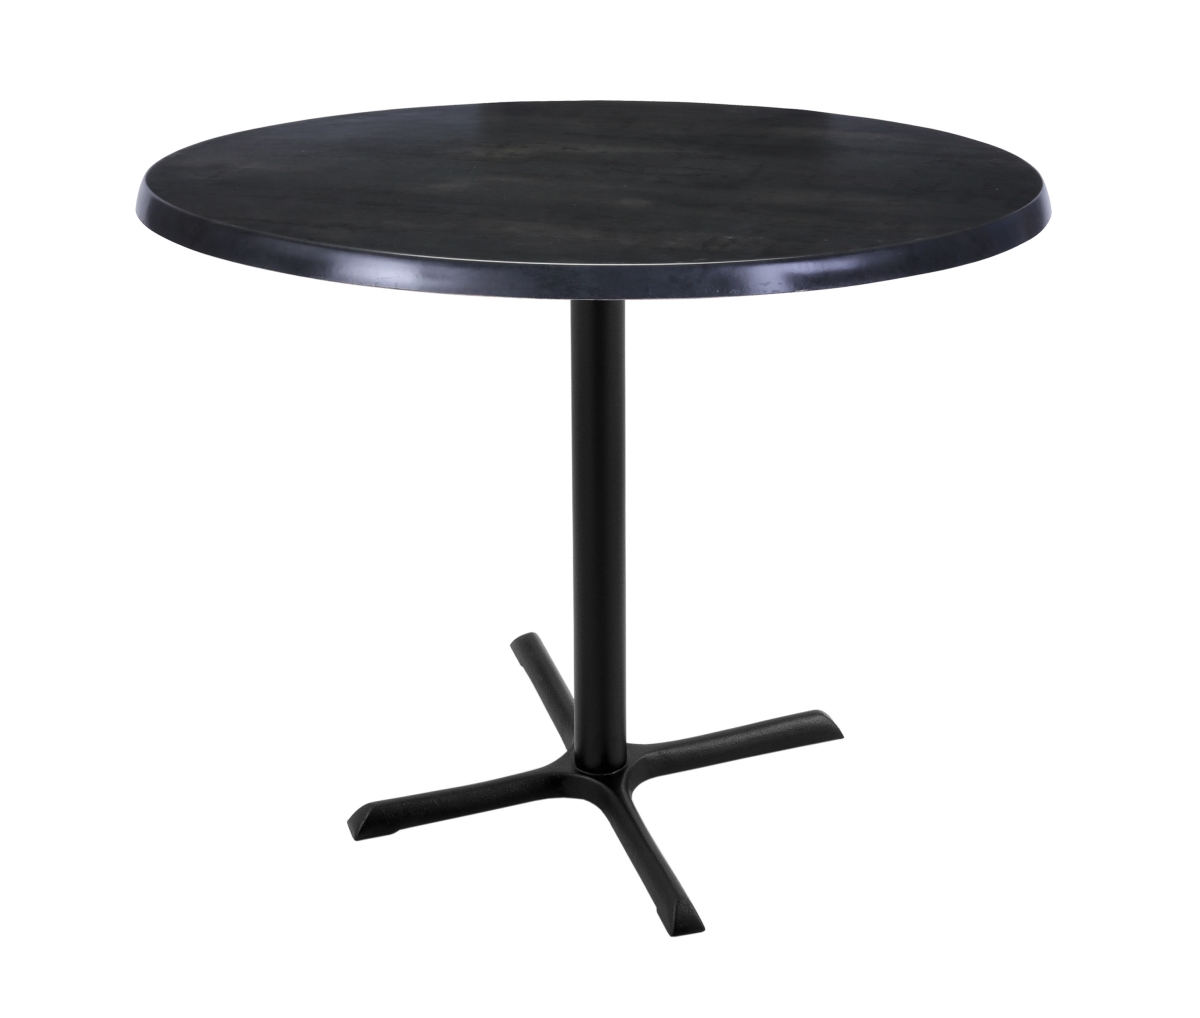 36 In. Black Table With 36 In. Diameter Indoor & Outdoor Black Steel Round Top